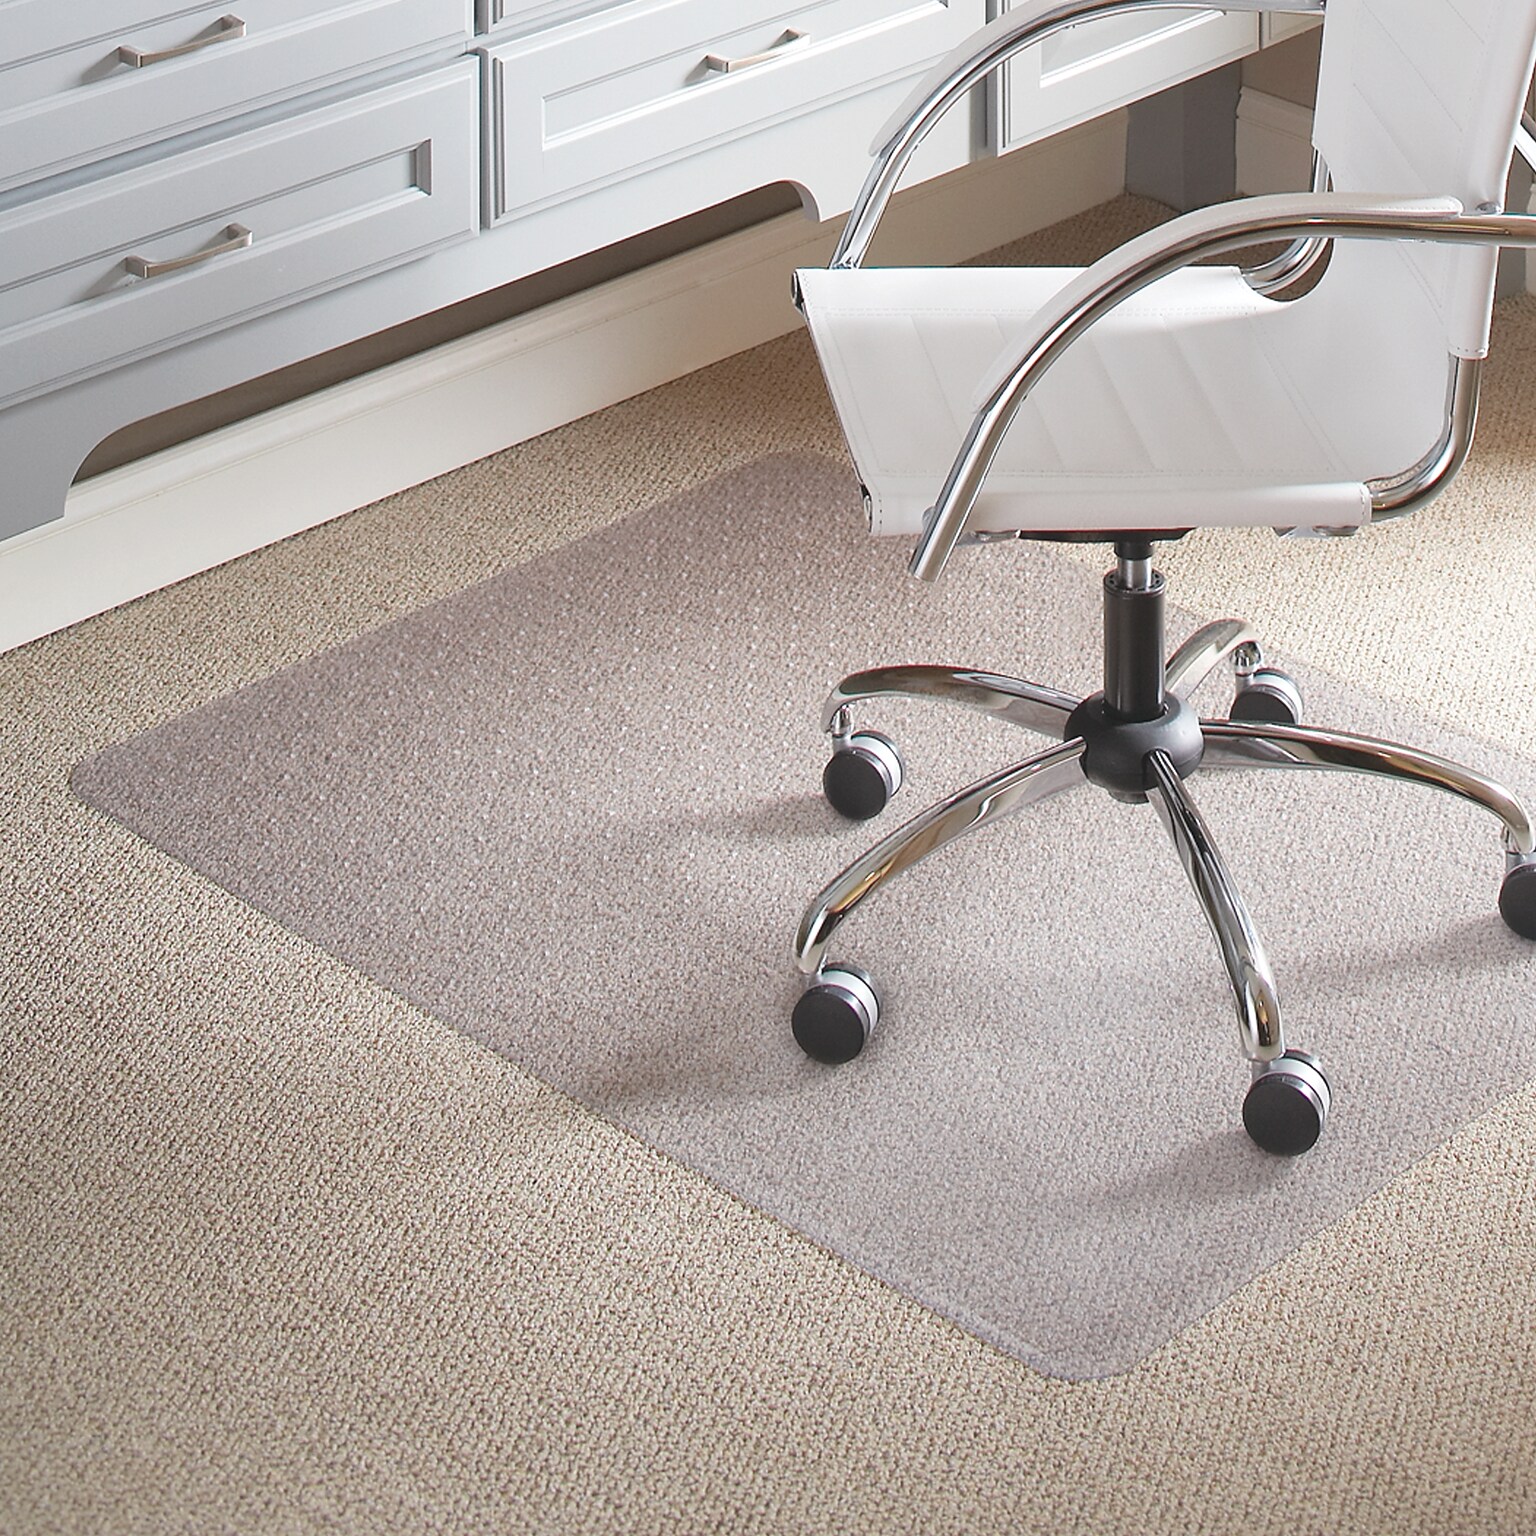 ES Robbins EverLife Carpet Chair Mat, 46 x 60, Medium-Pile, Clear (128371)